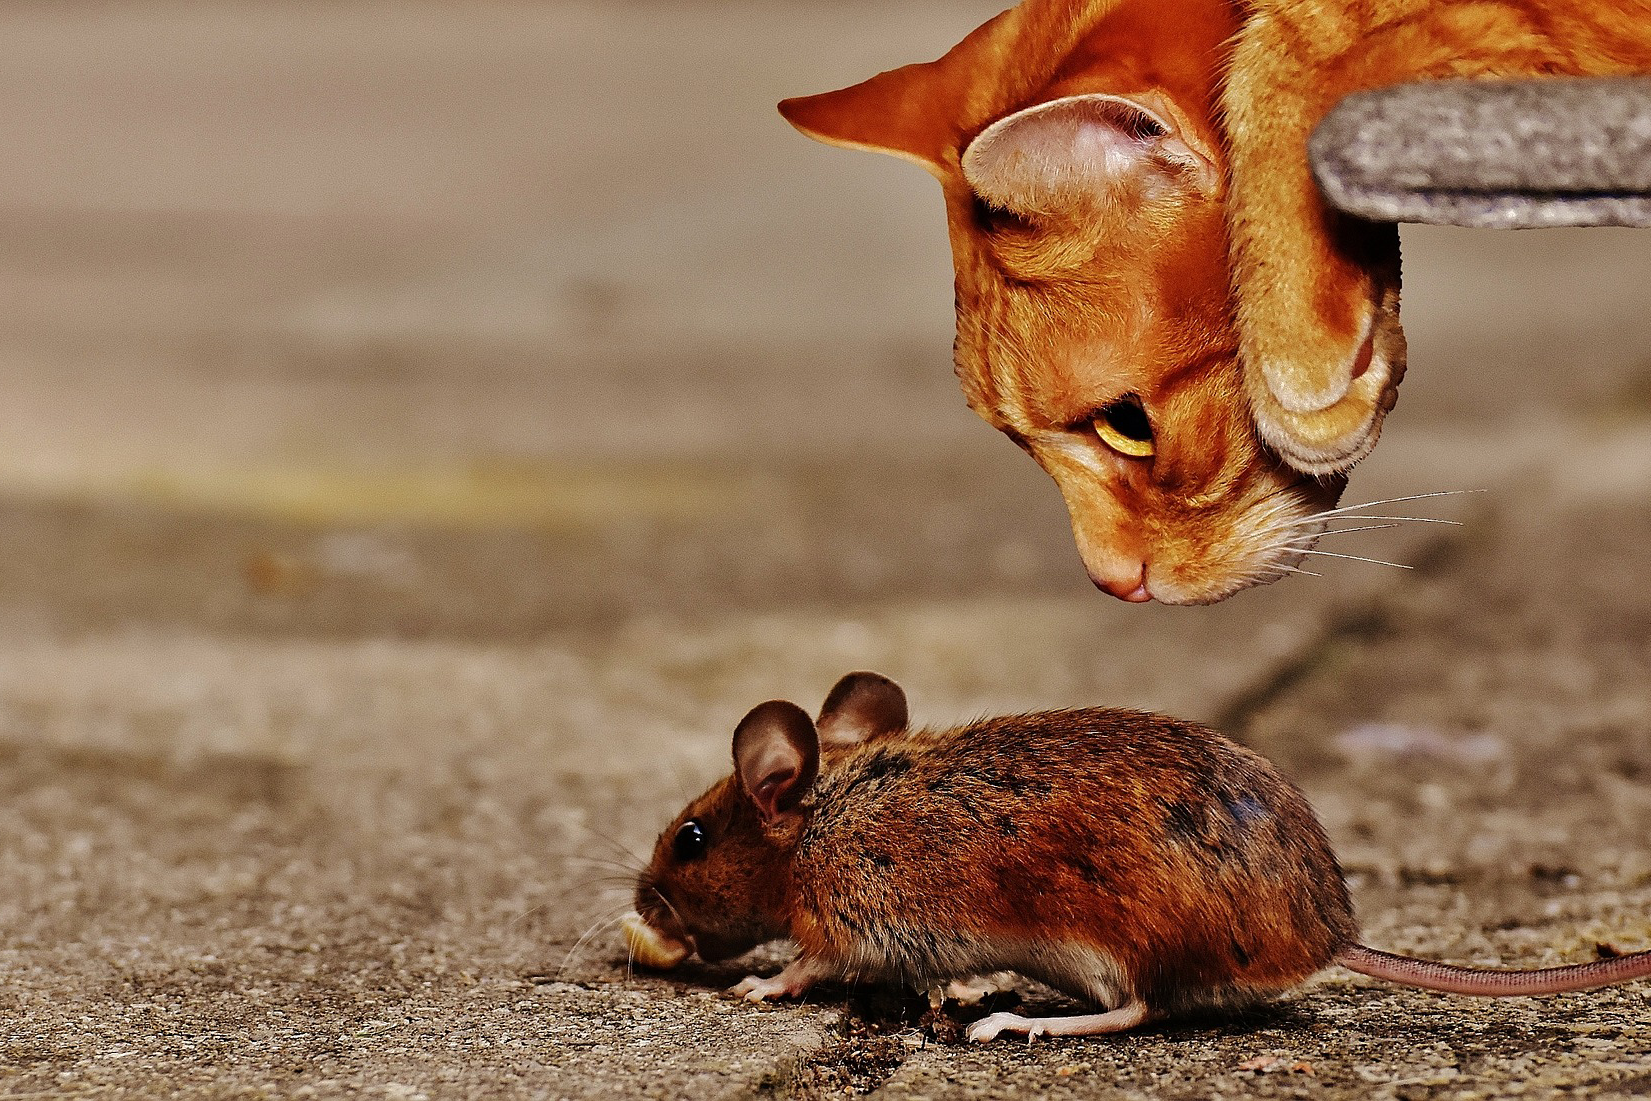 Pornoportal xHamster spielt mit Behörden Katz und Maus